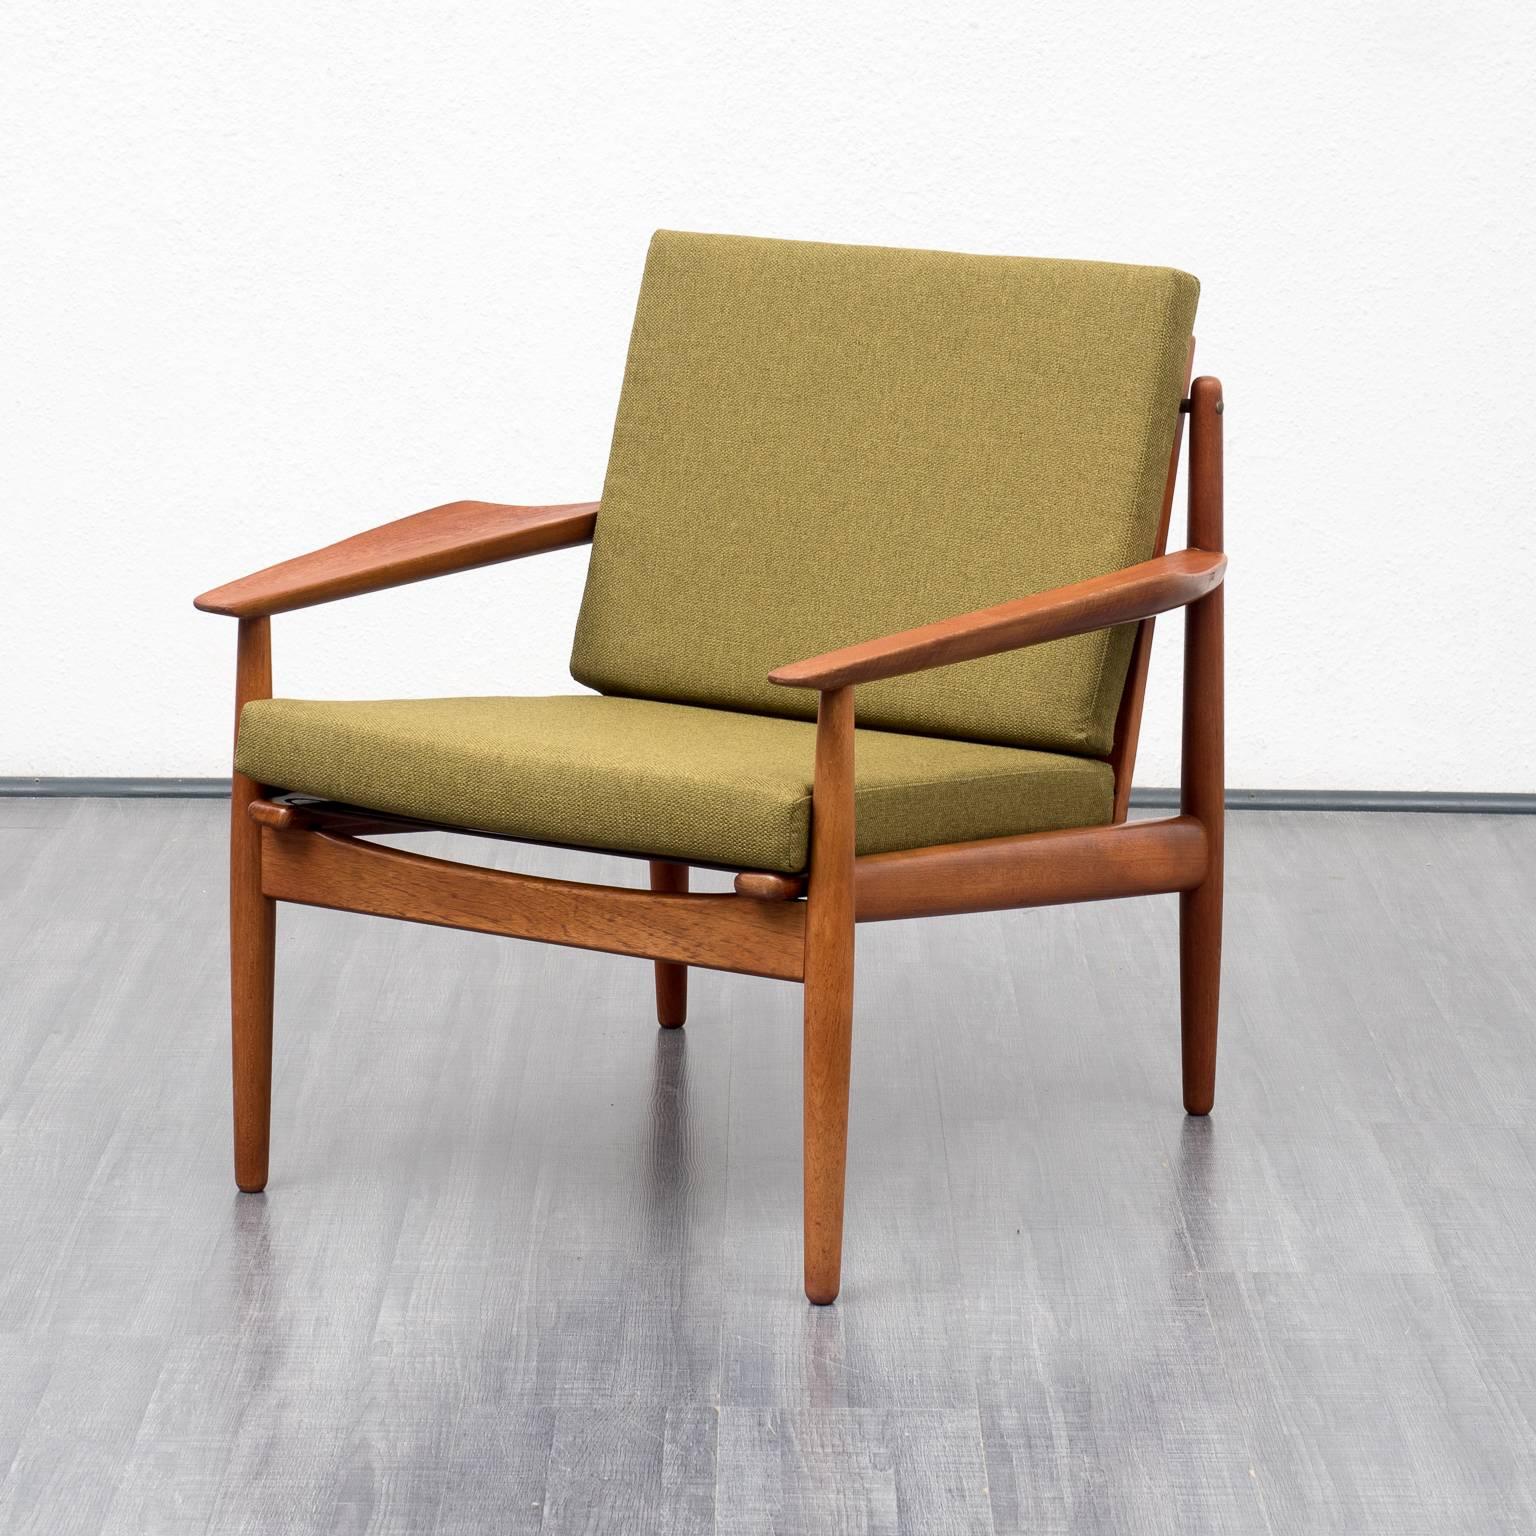 1960s Teak Armchair, Danish Design 1